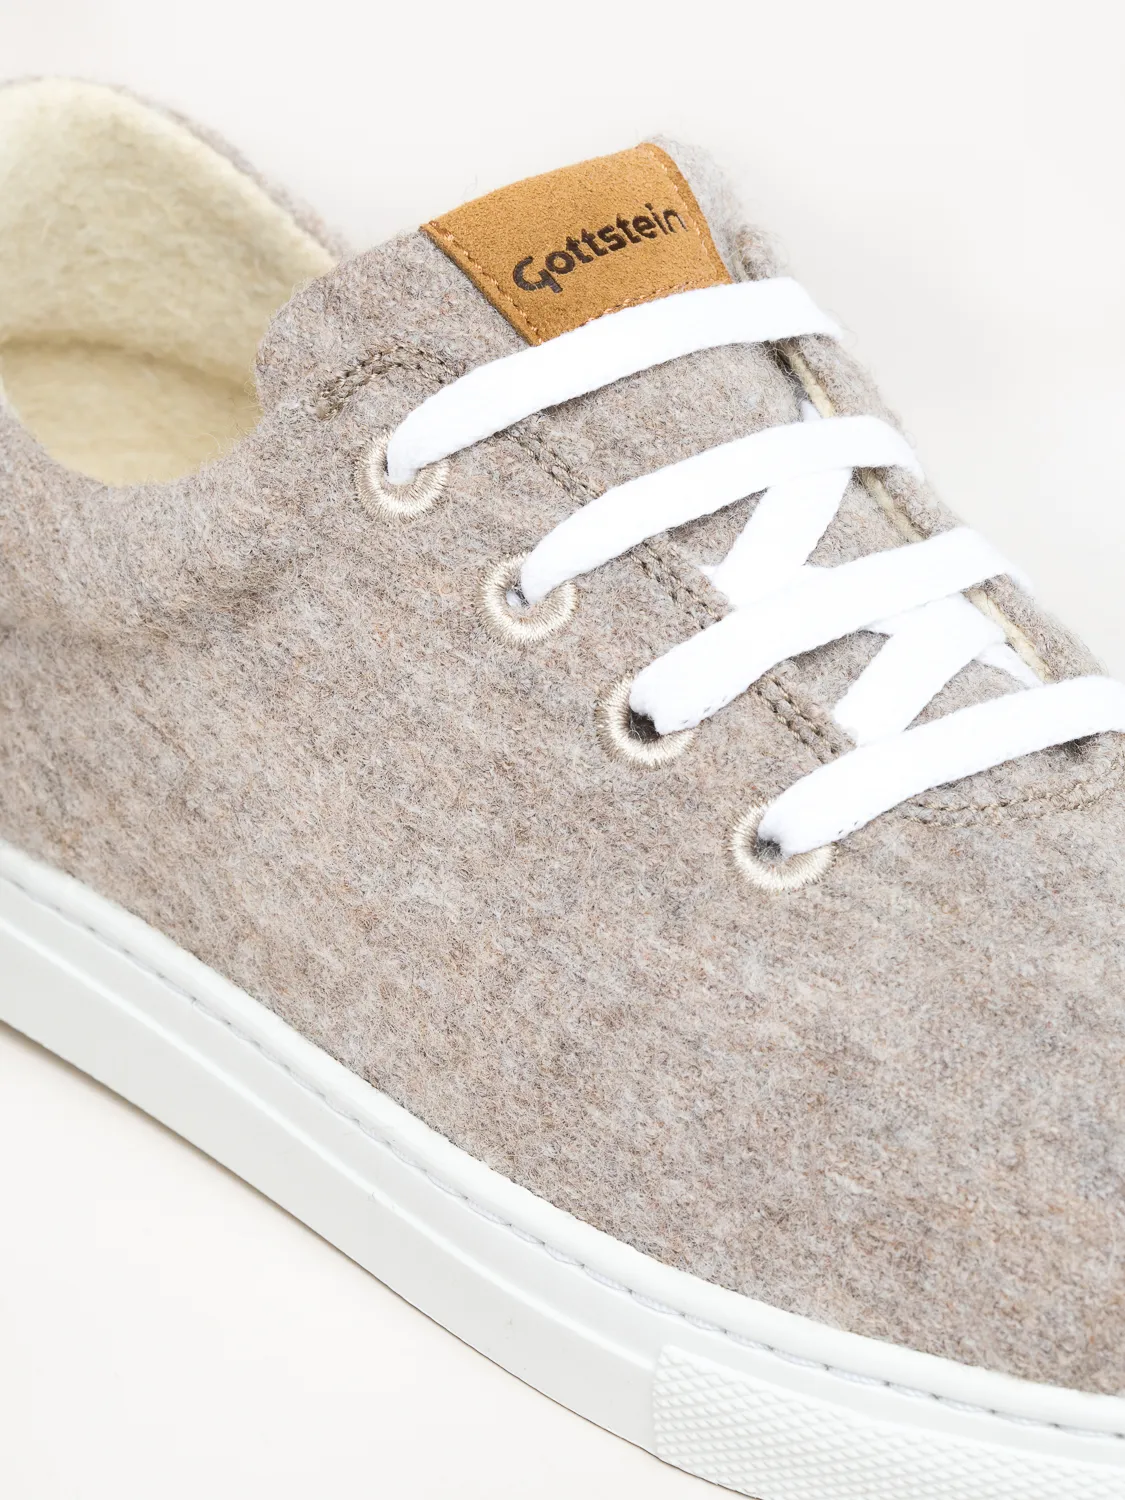 Gottstein-Wool-Walker-101-Woll-Sneaker-beige (1)